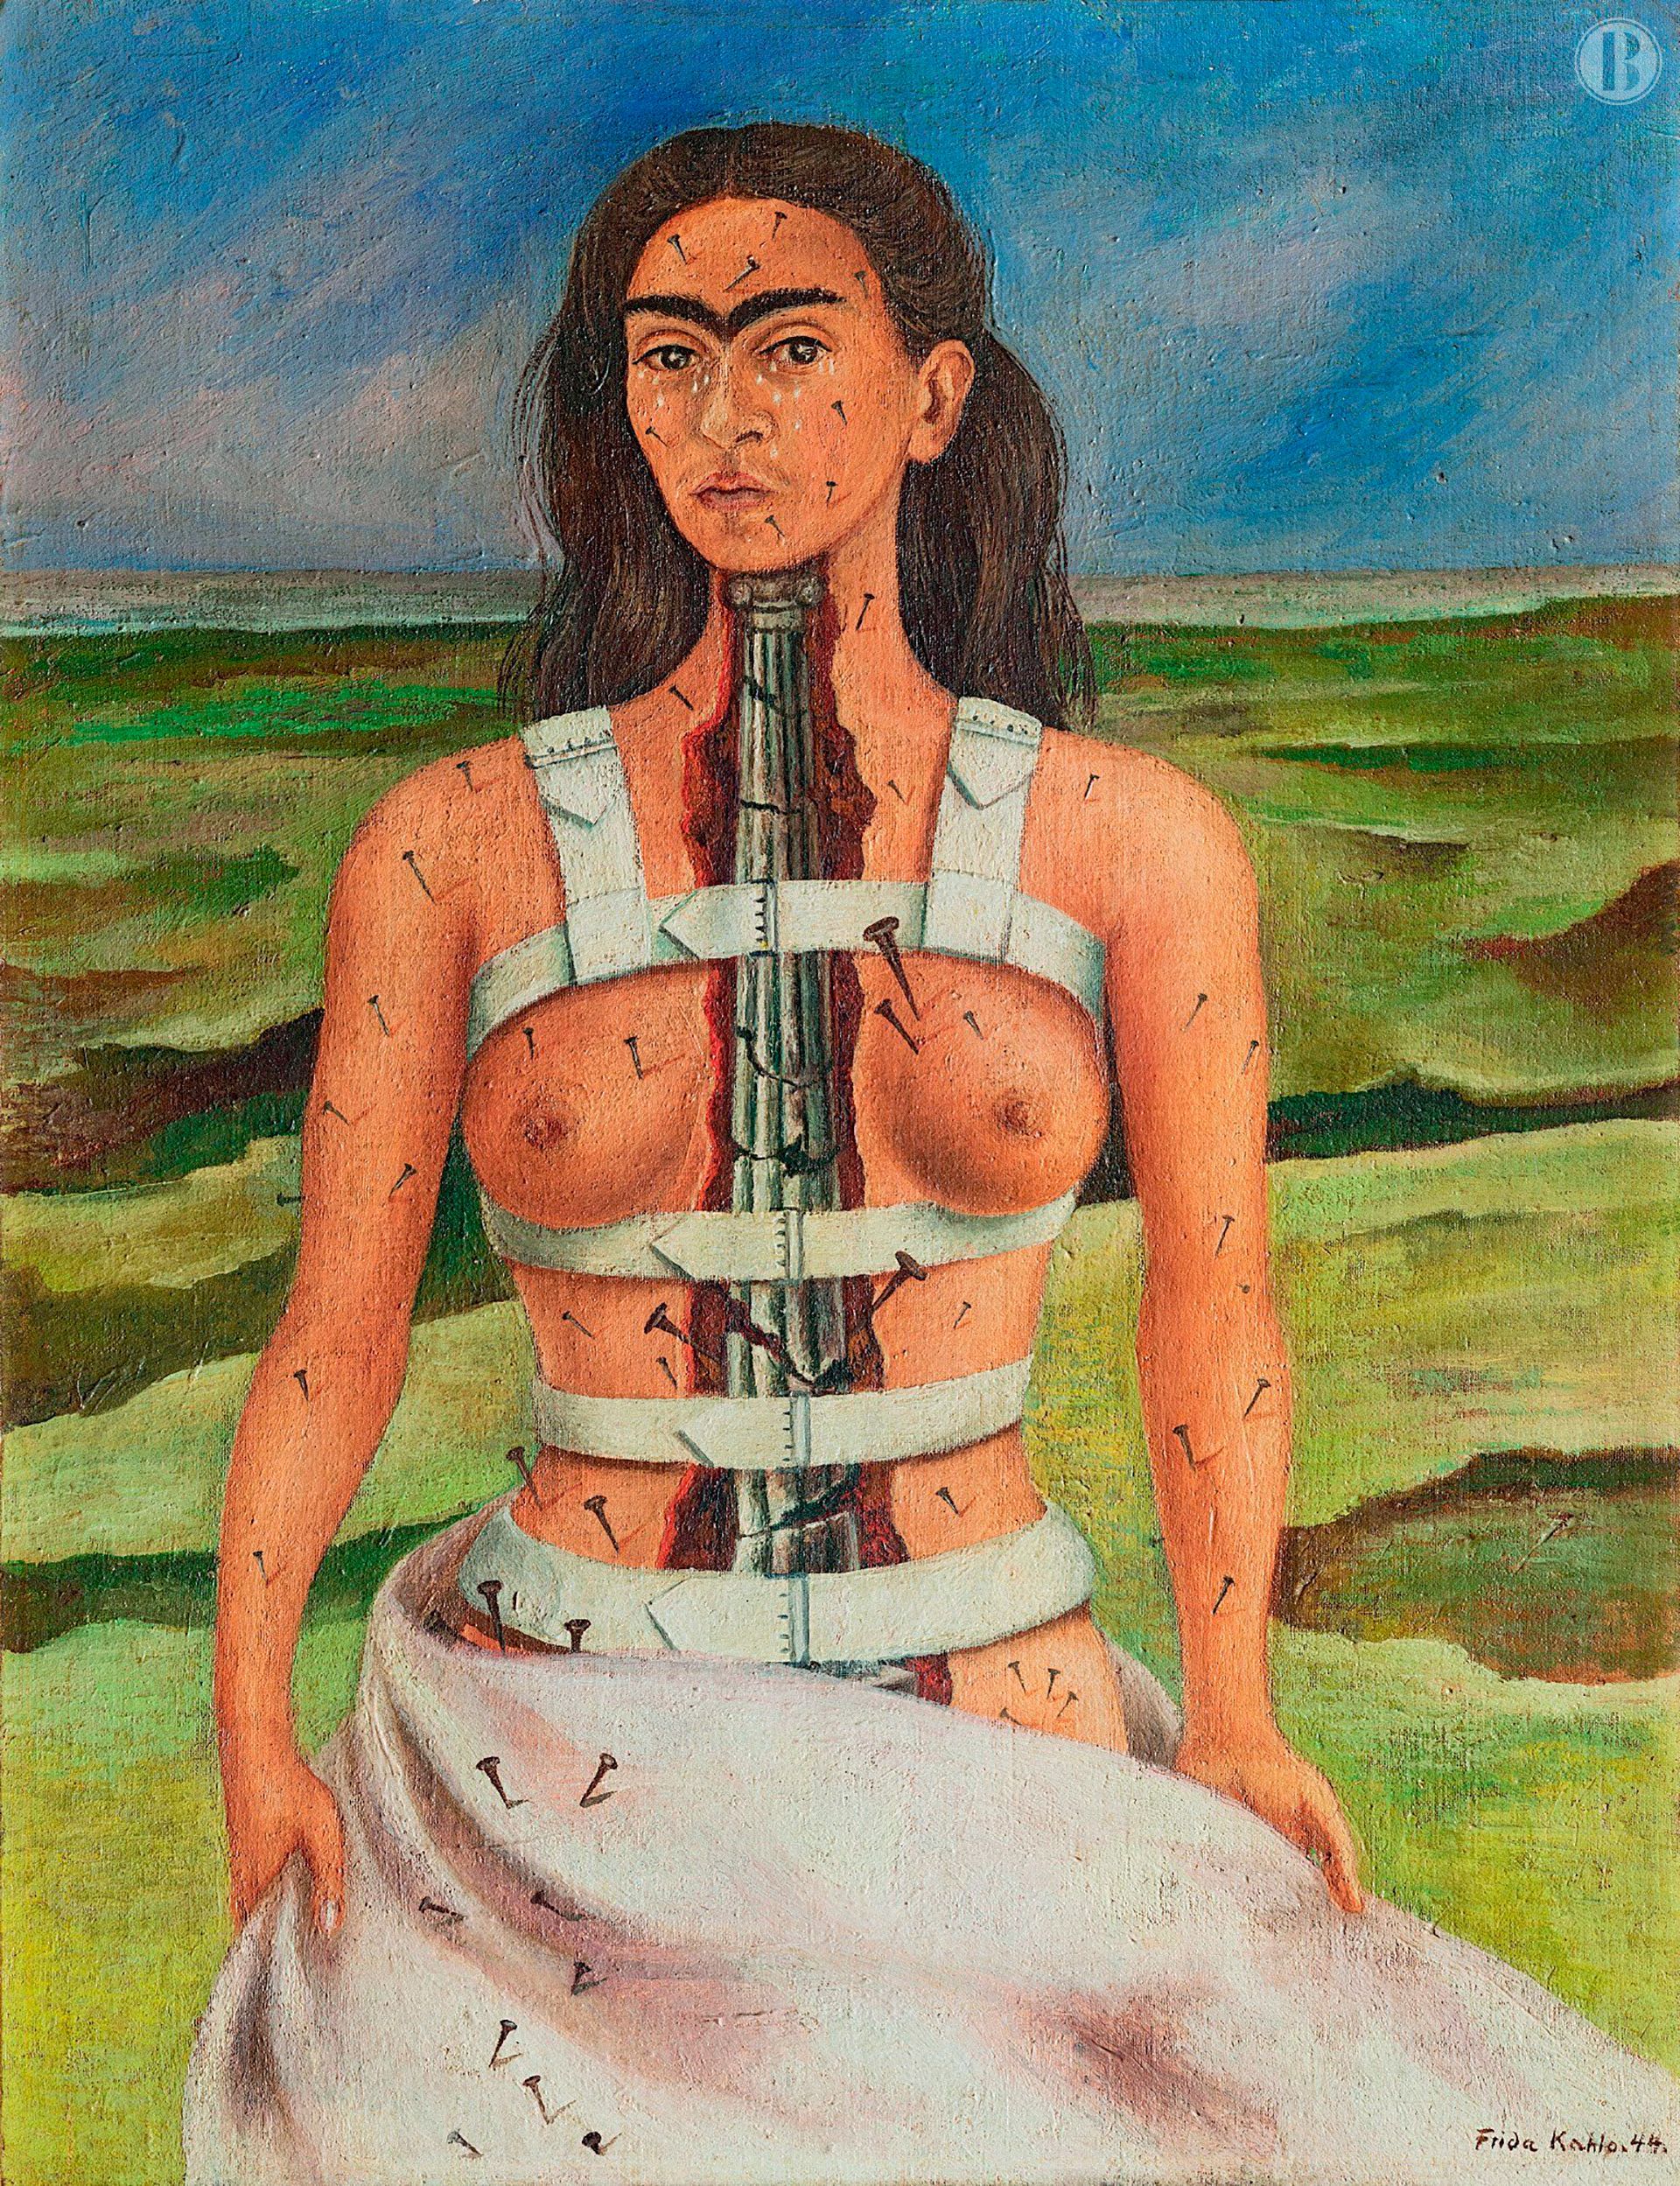 Milán redescubre a Frida Kahlo y su extraordinario arte más allá del mito